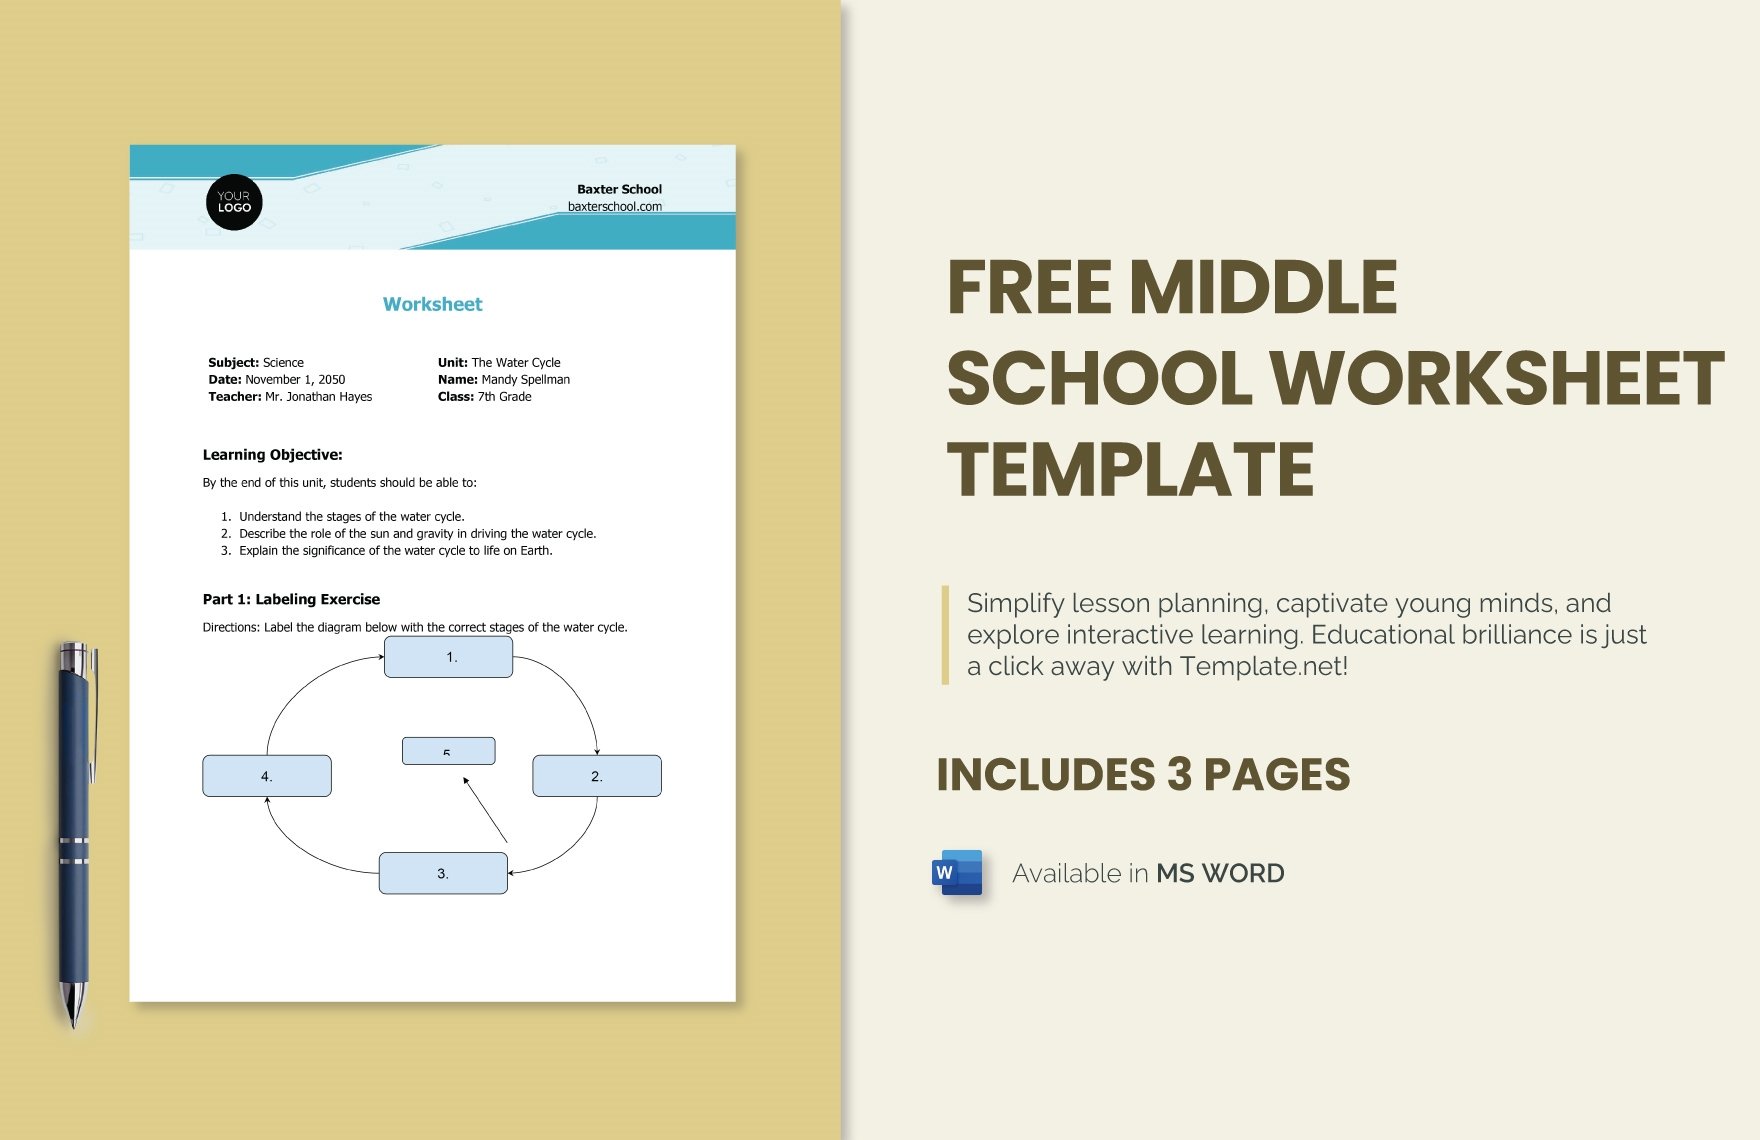 Free Middle School Worksheet Template in Word